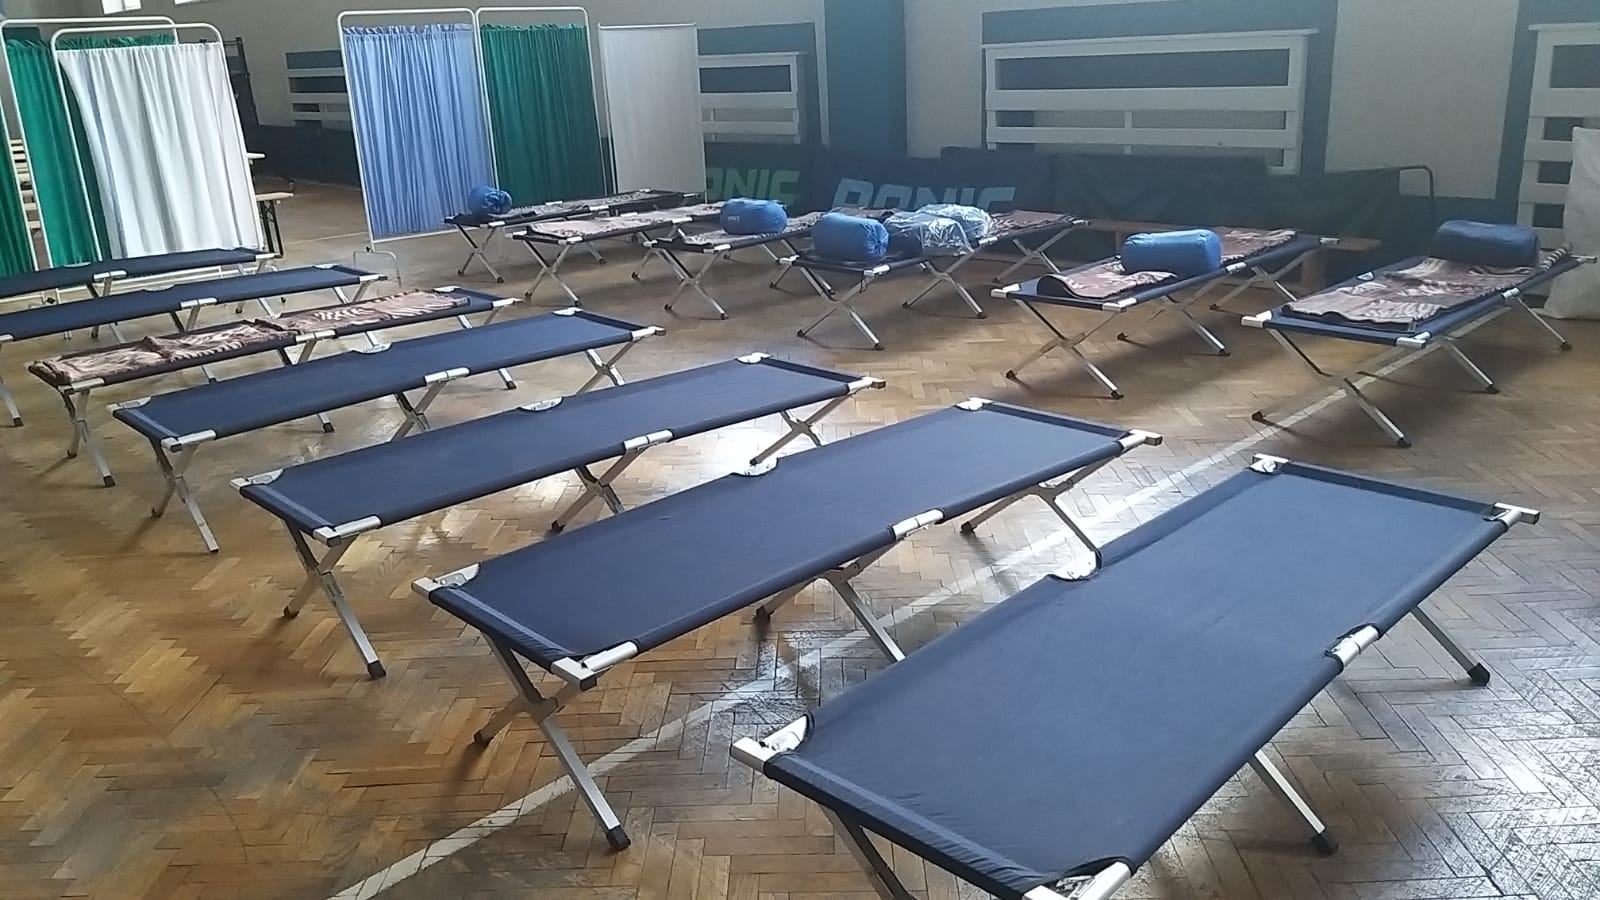 zdjęcia pomieszczenia przygotowanego do przyjęcia uchodźców